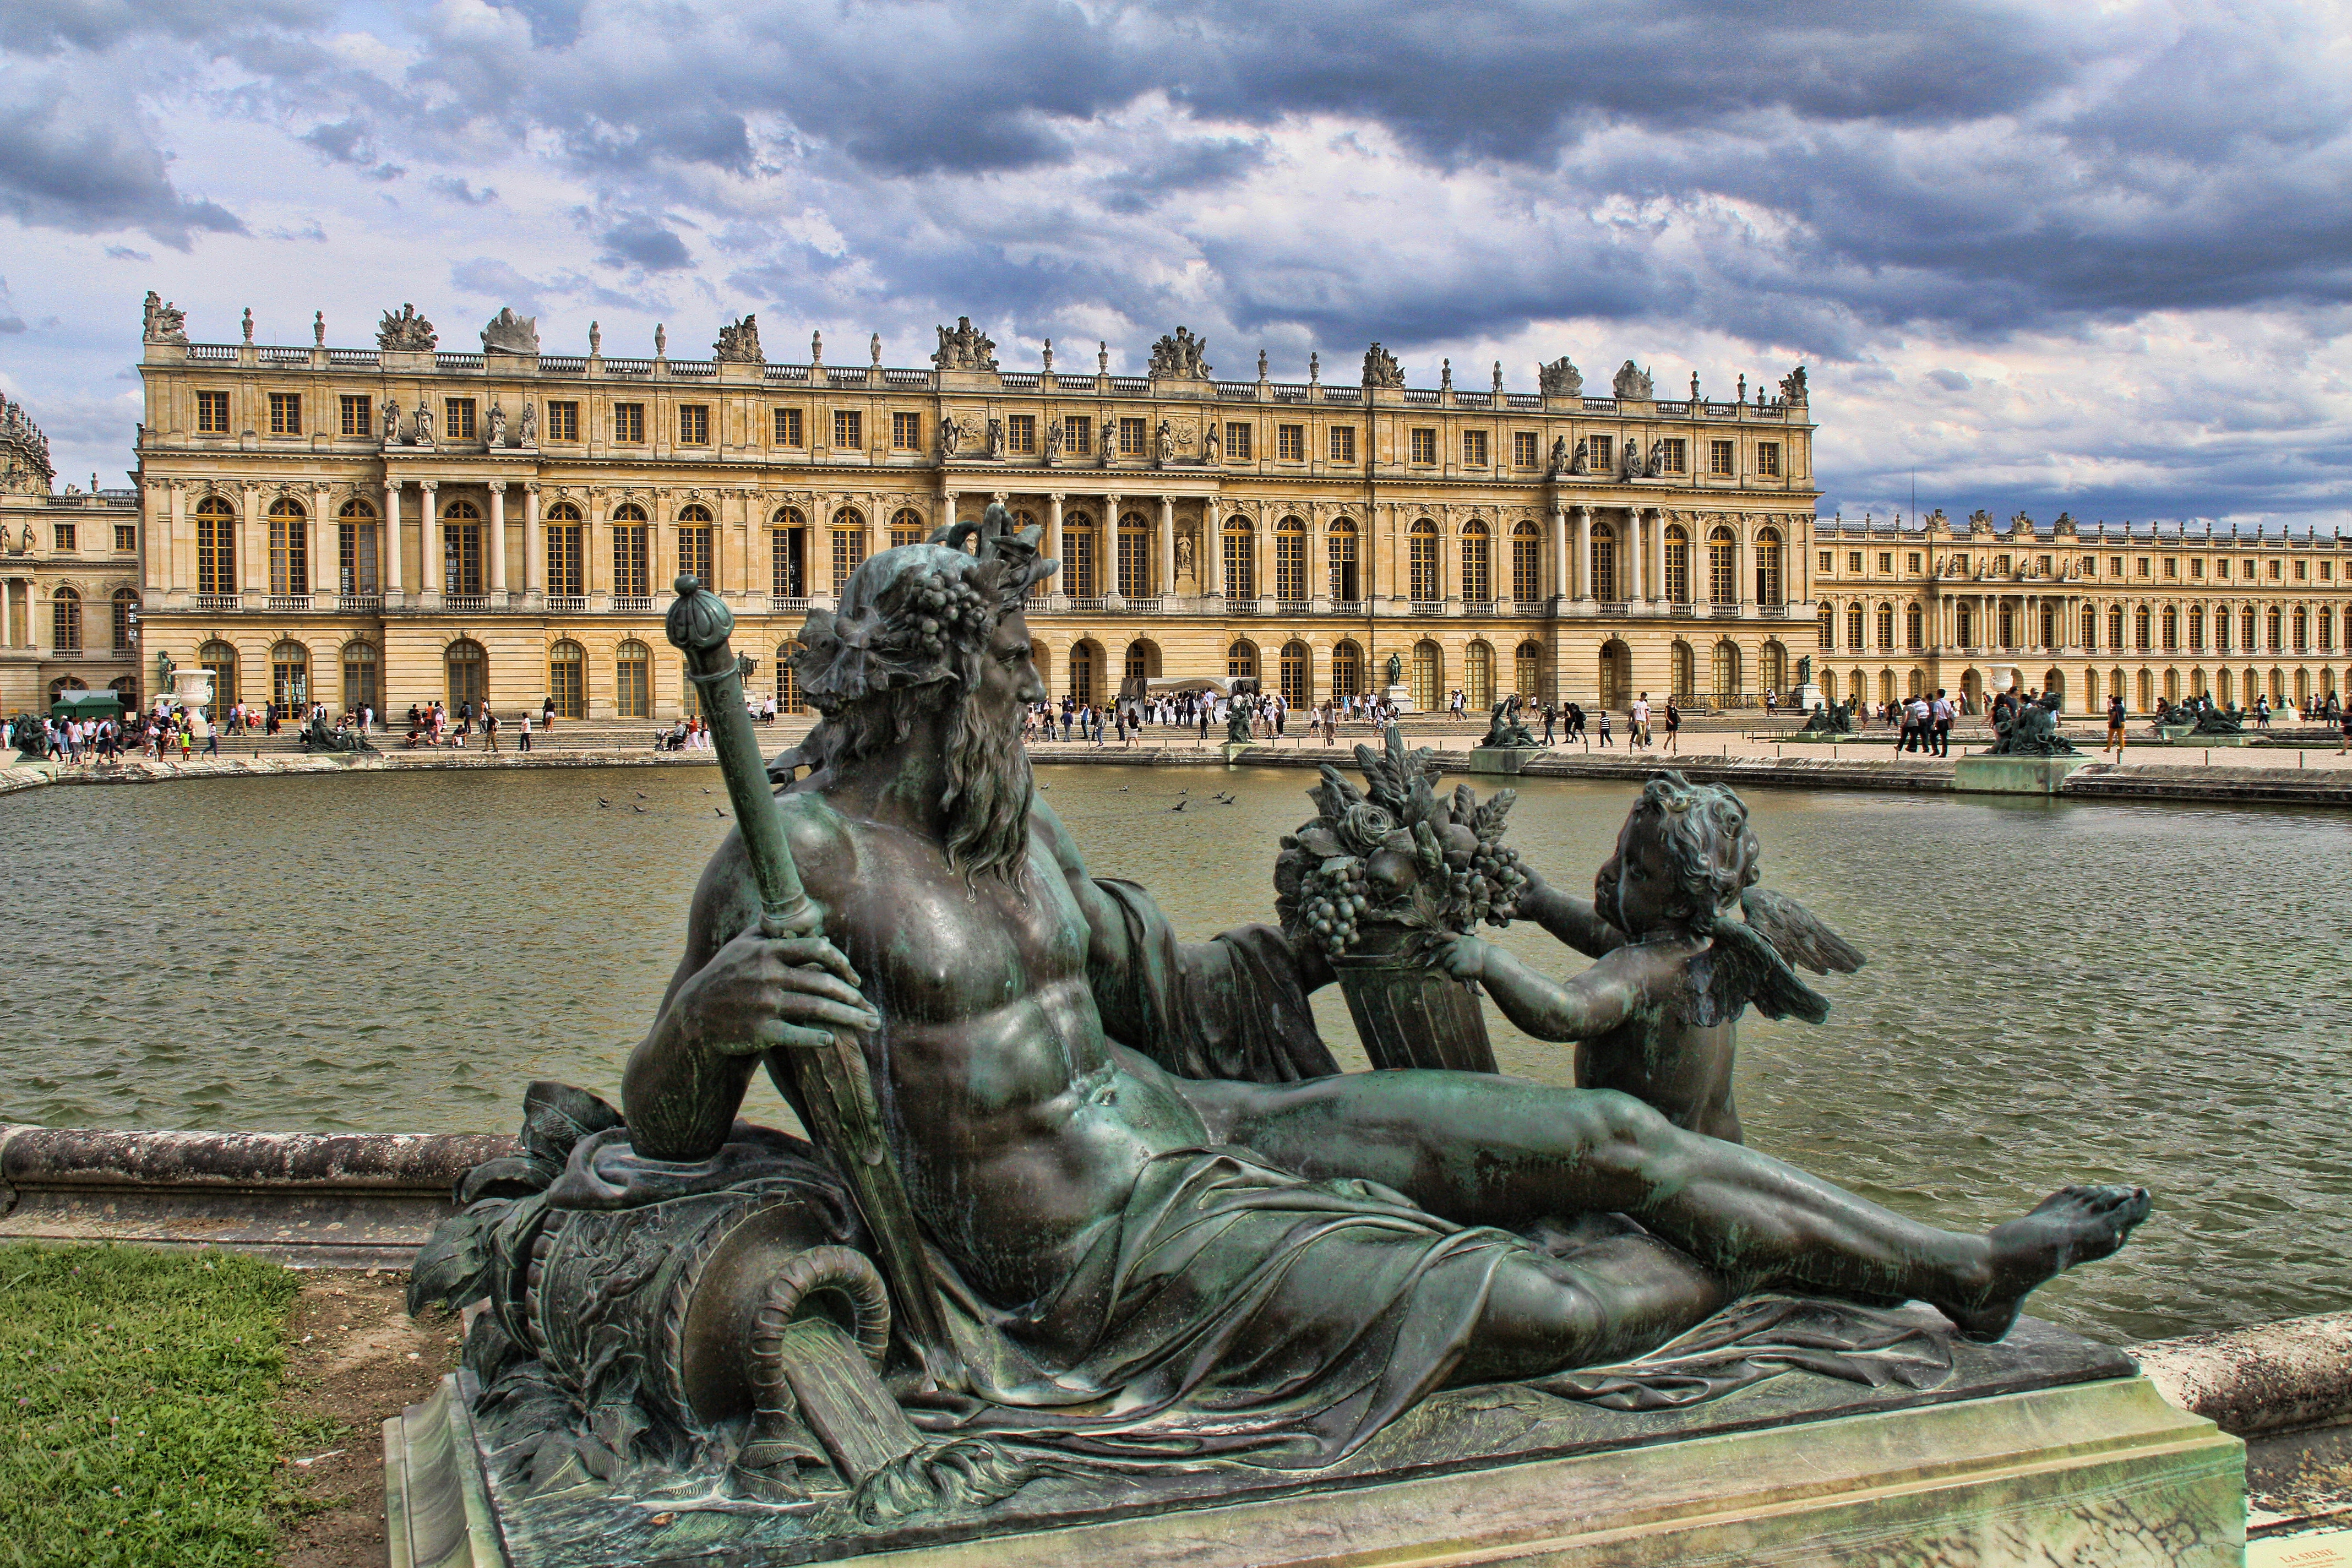 Скачать обои Версальский Дворец на телефон бесплатно